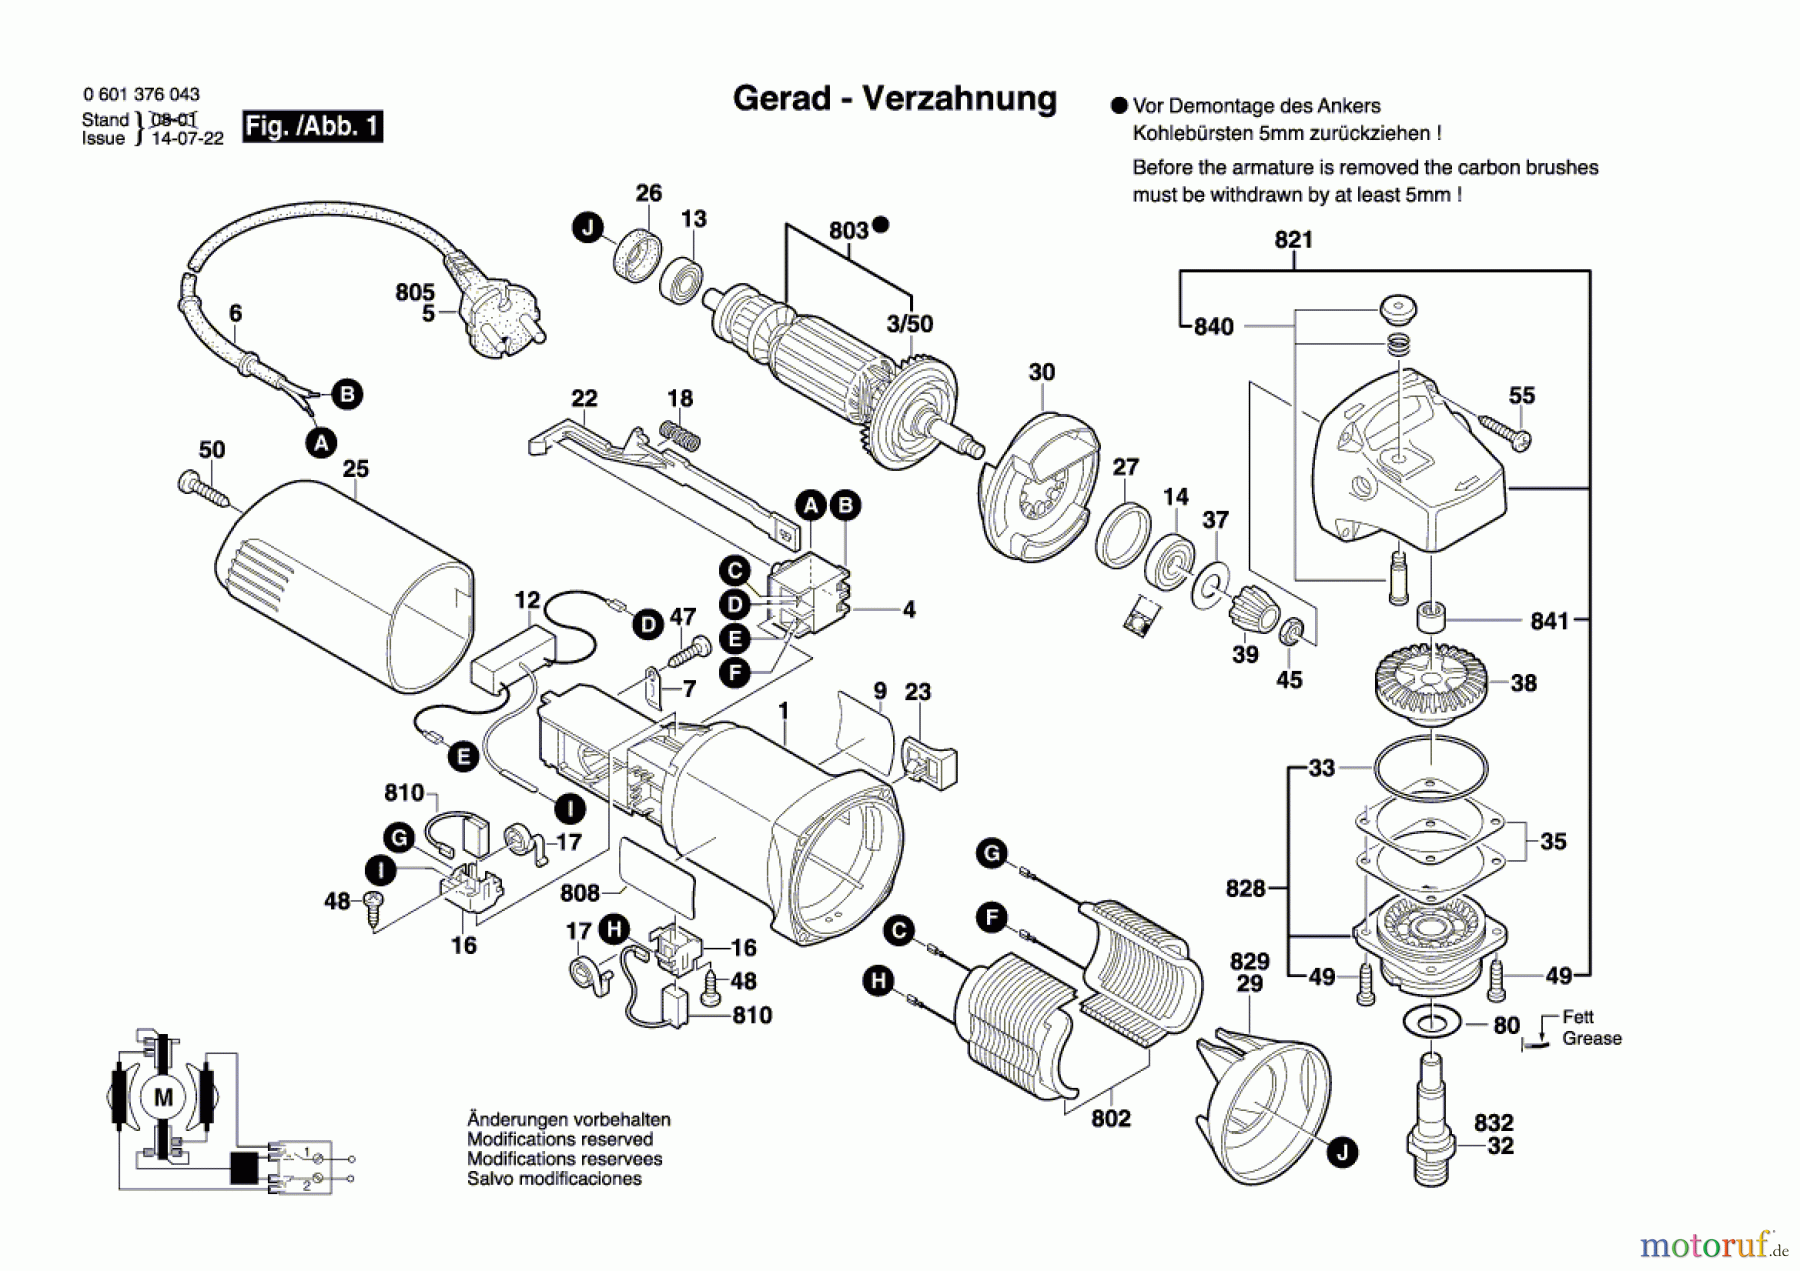  Bosch Werkzeug Winkelschleifer GWS 580 Seite 1